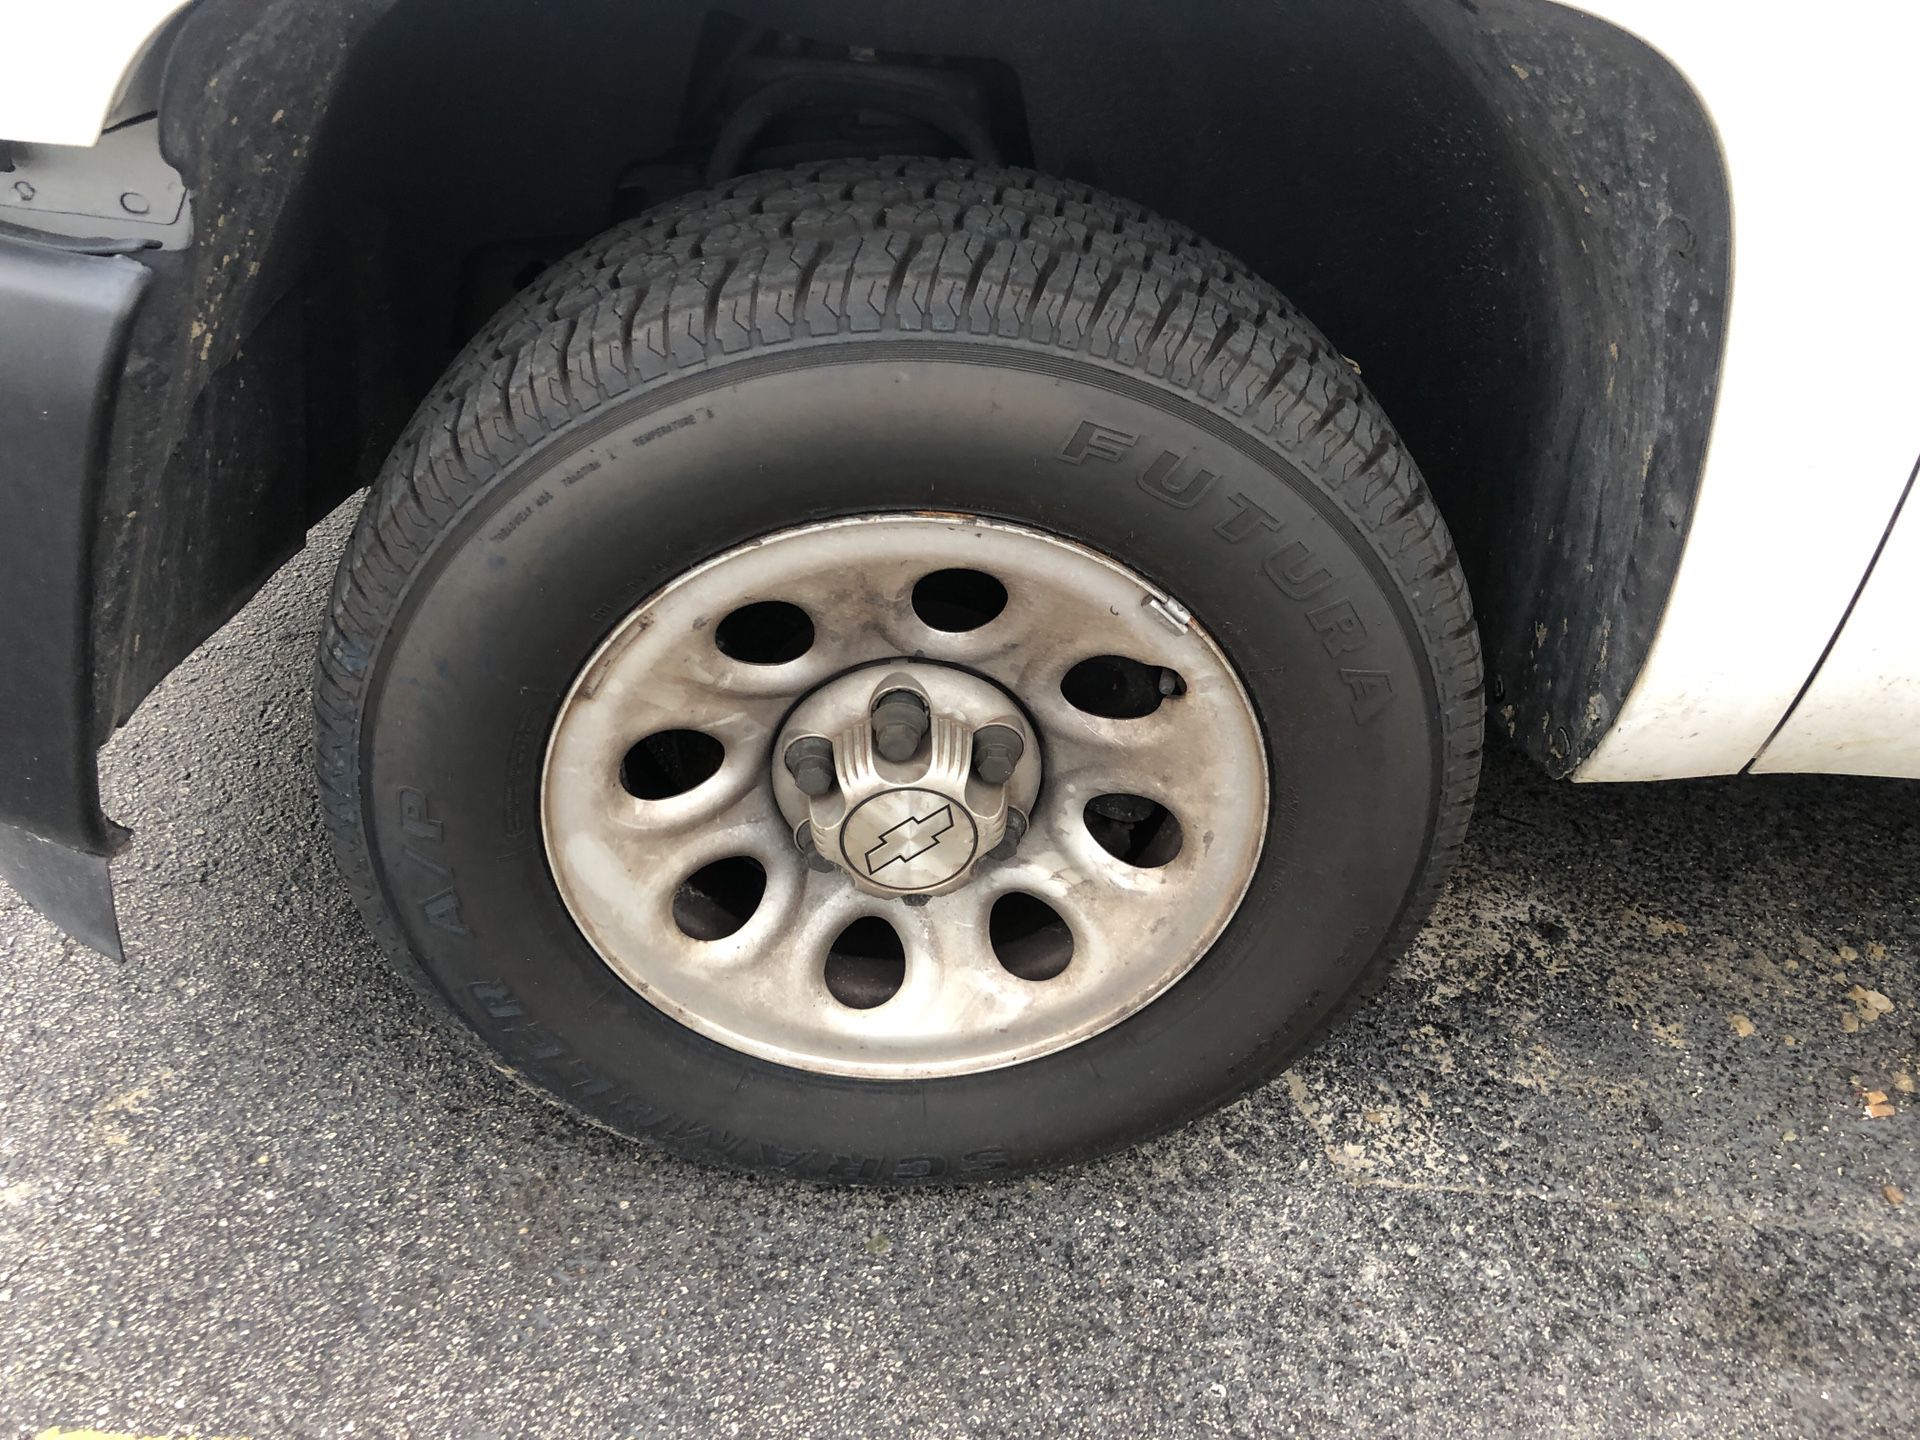 Set of 4 Silverado rims and tires